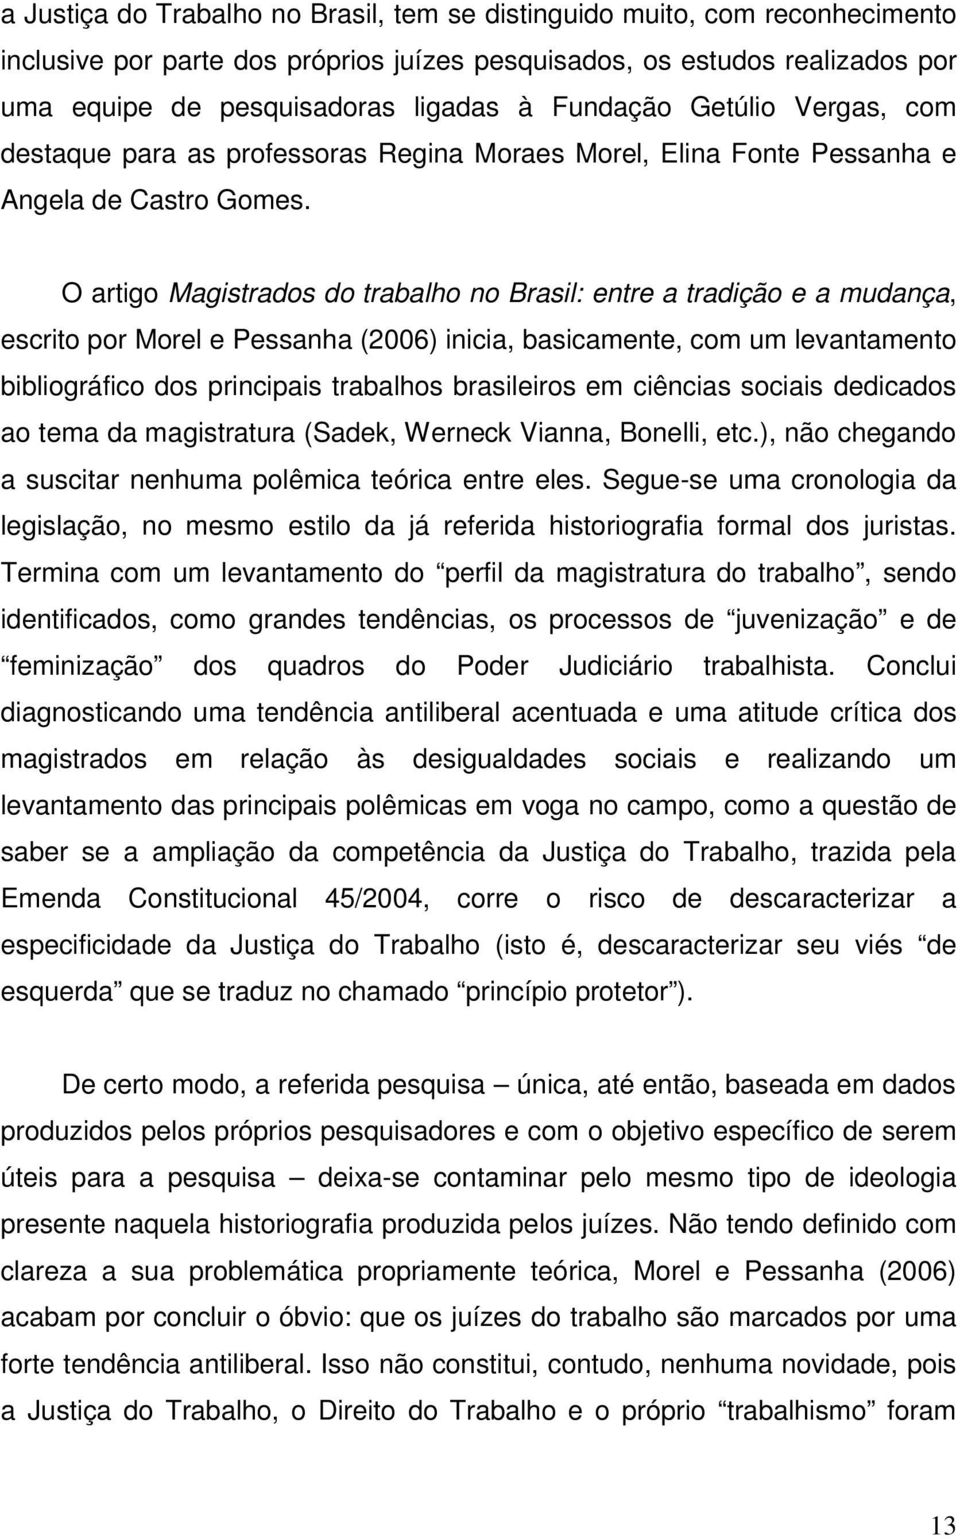 O artigo Magistrados do trabalho no Brasil: entre a tradição e a mudança, escrito por Morel e Pessanha (2006) inicia, basicamente, com um levantamento bibliográfico dos principais trabalhos